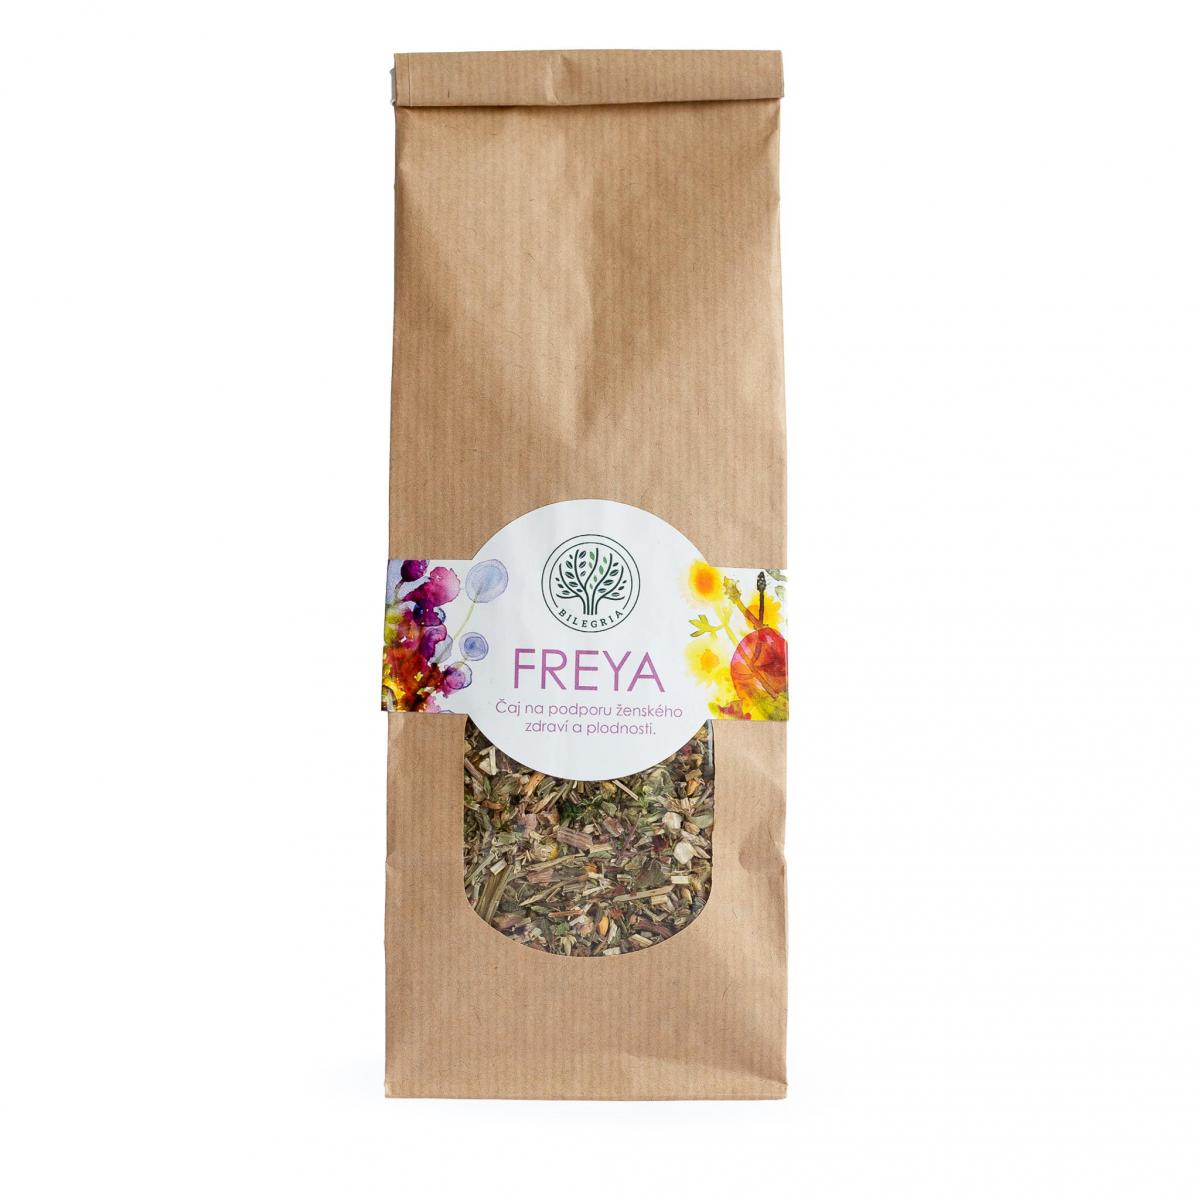 Levně Bilegria FREYA - bylinná čajová směs na podporu ženského zdraví a plodnosti, 100 g 100 g